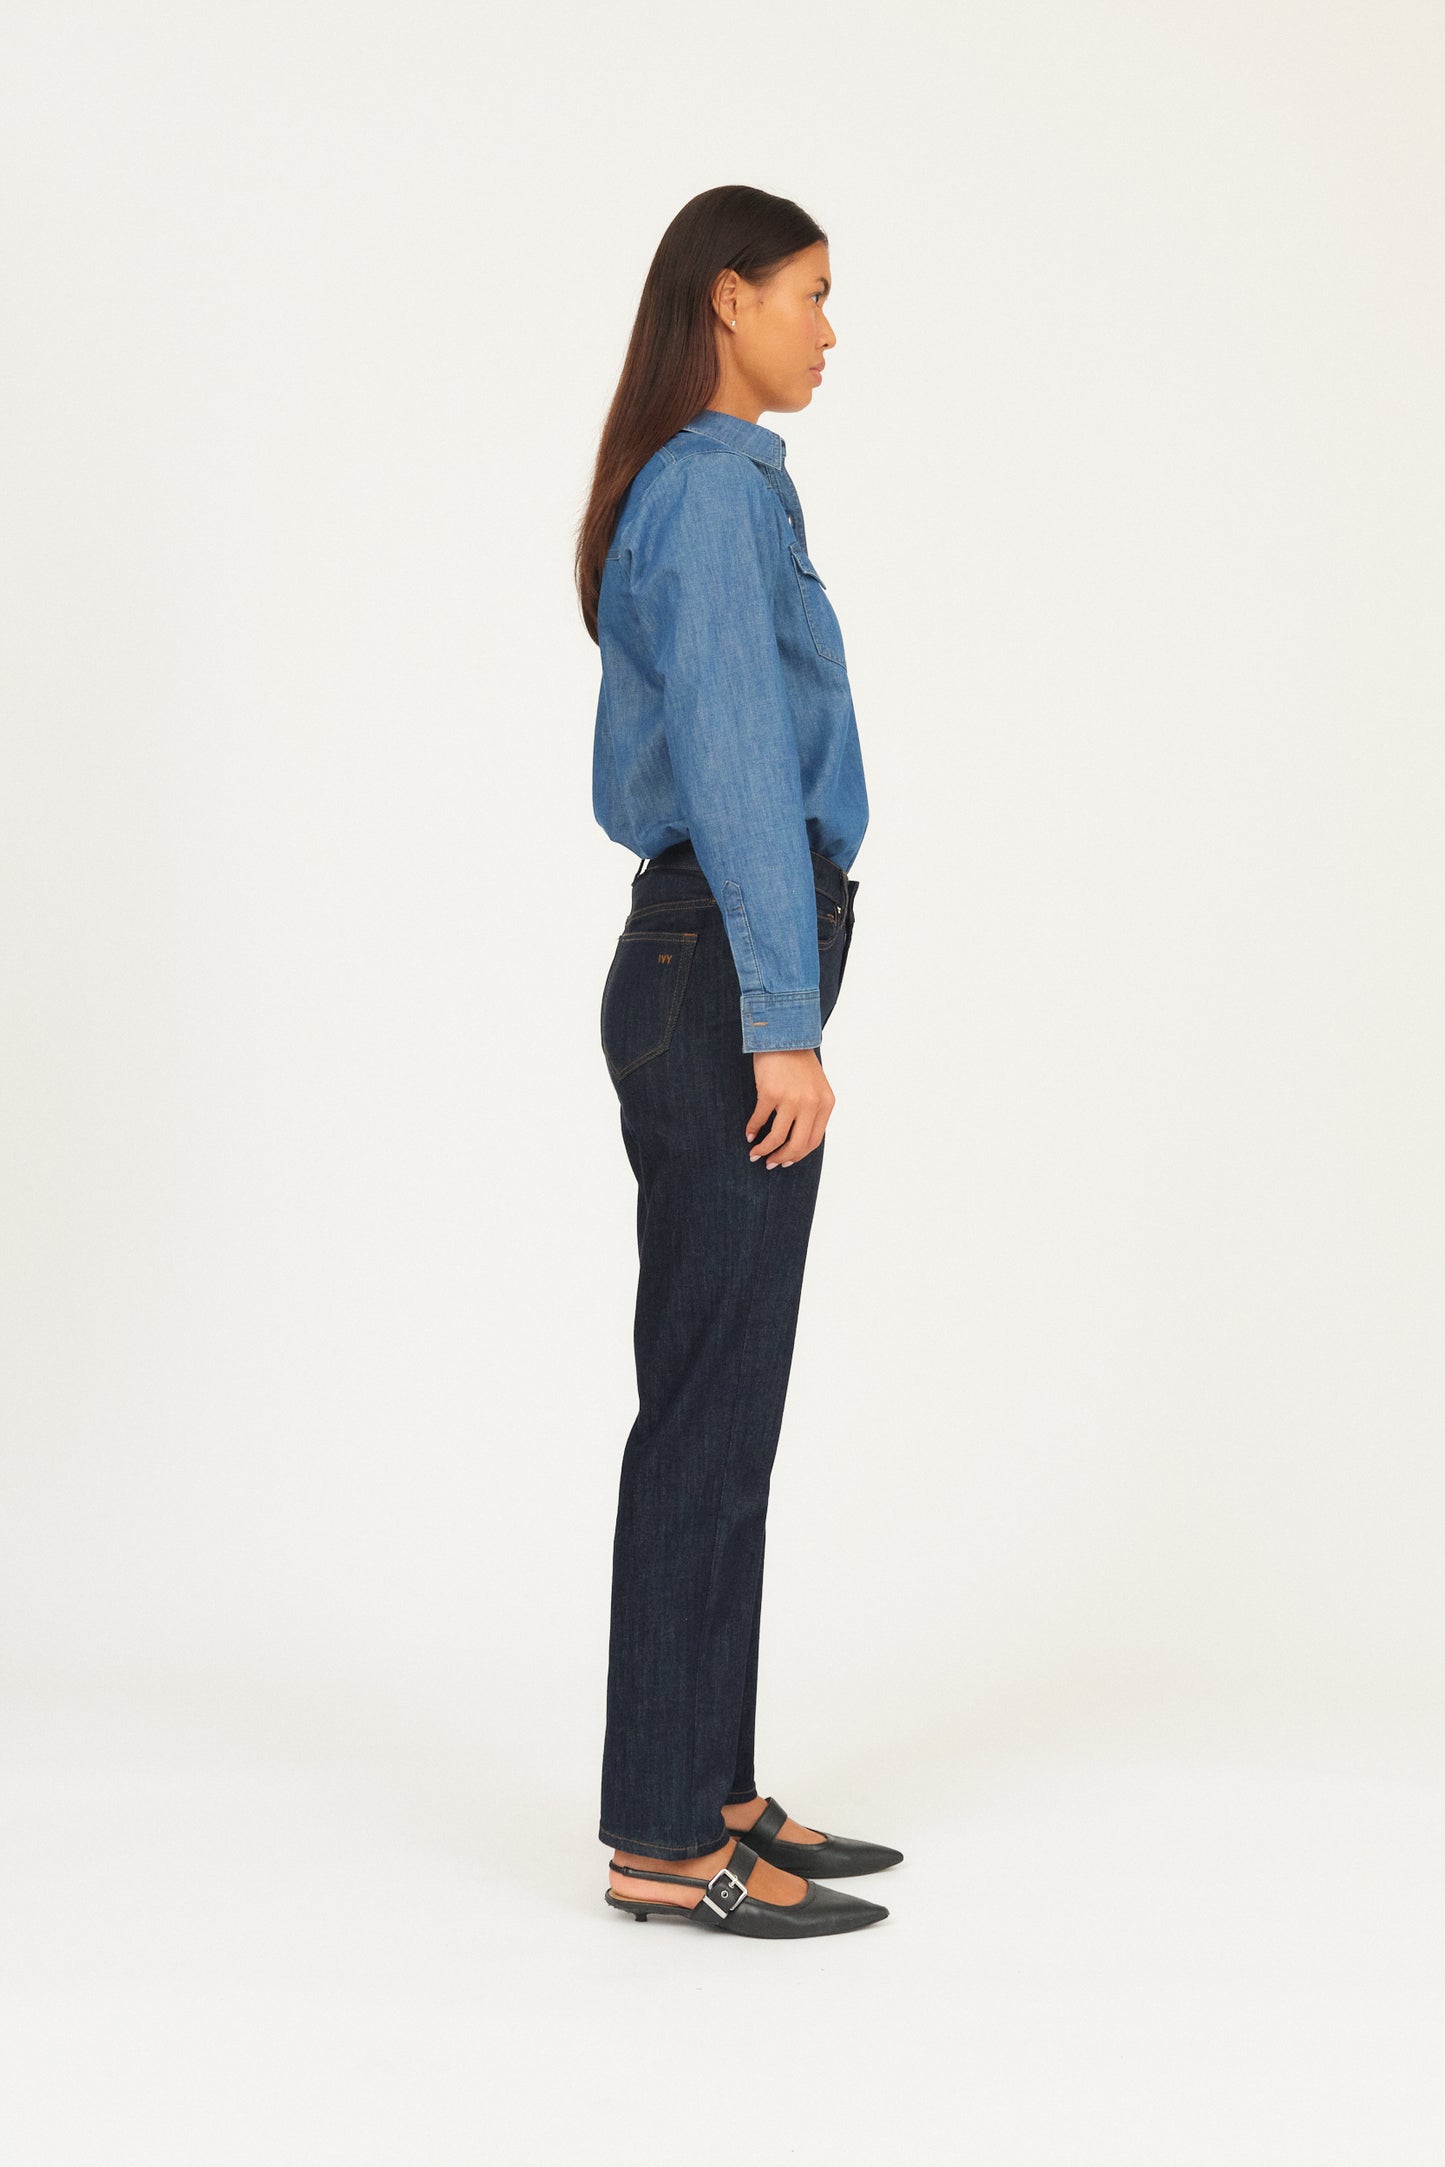 IVY Copenhagen IVY-Tonya Jeans Wash Excl. Blue Jeans & Pants 51 Denim Blue